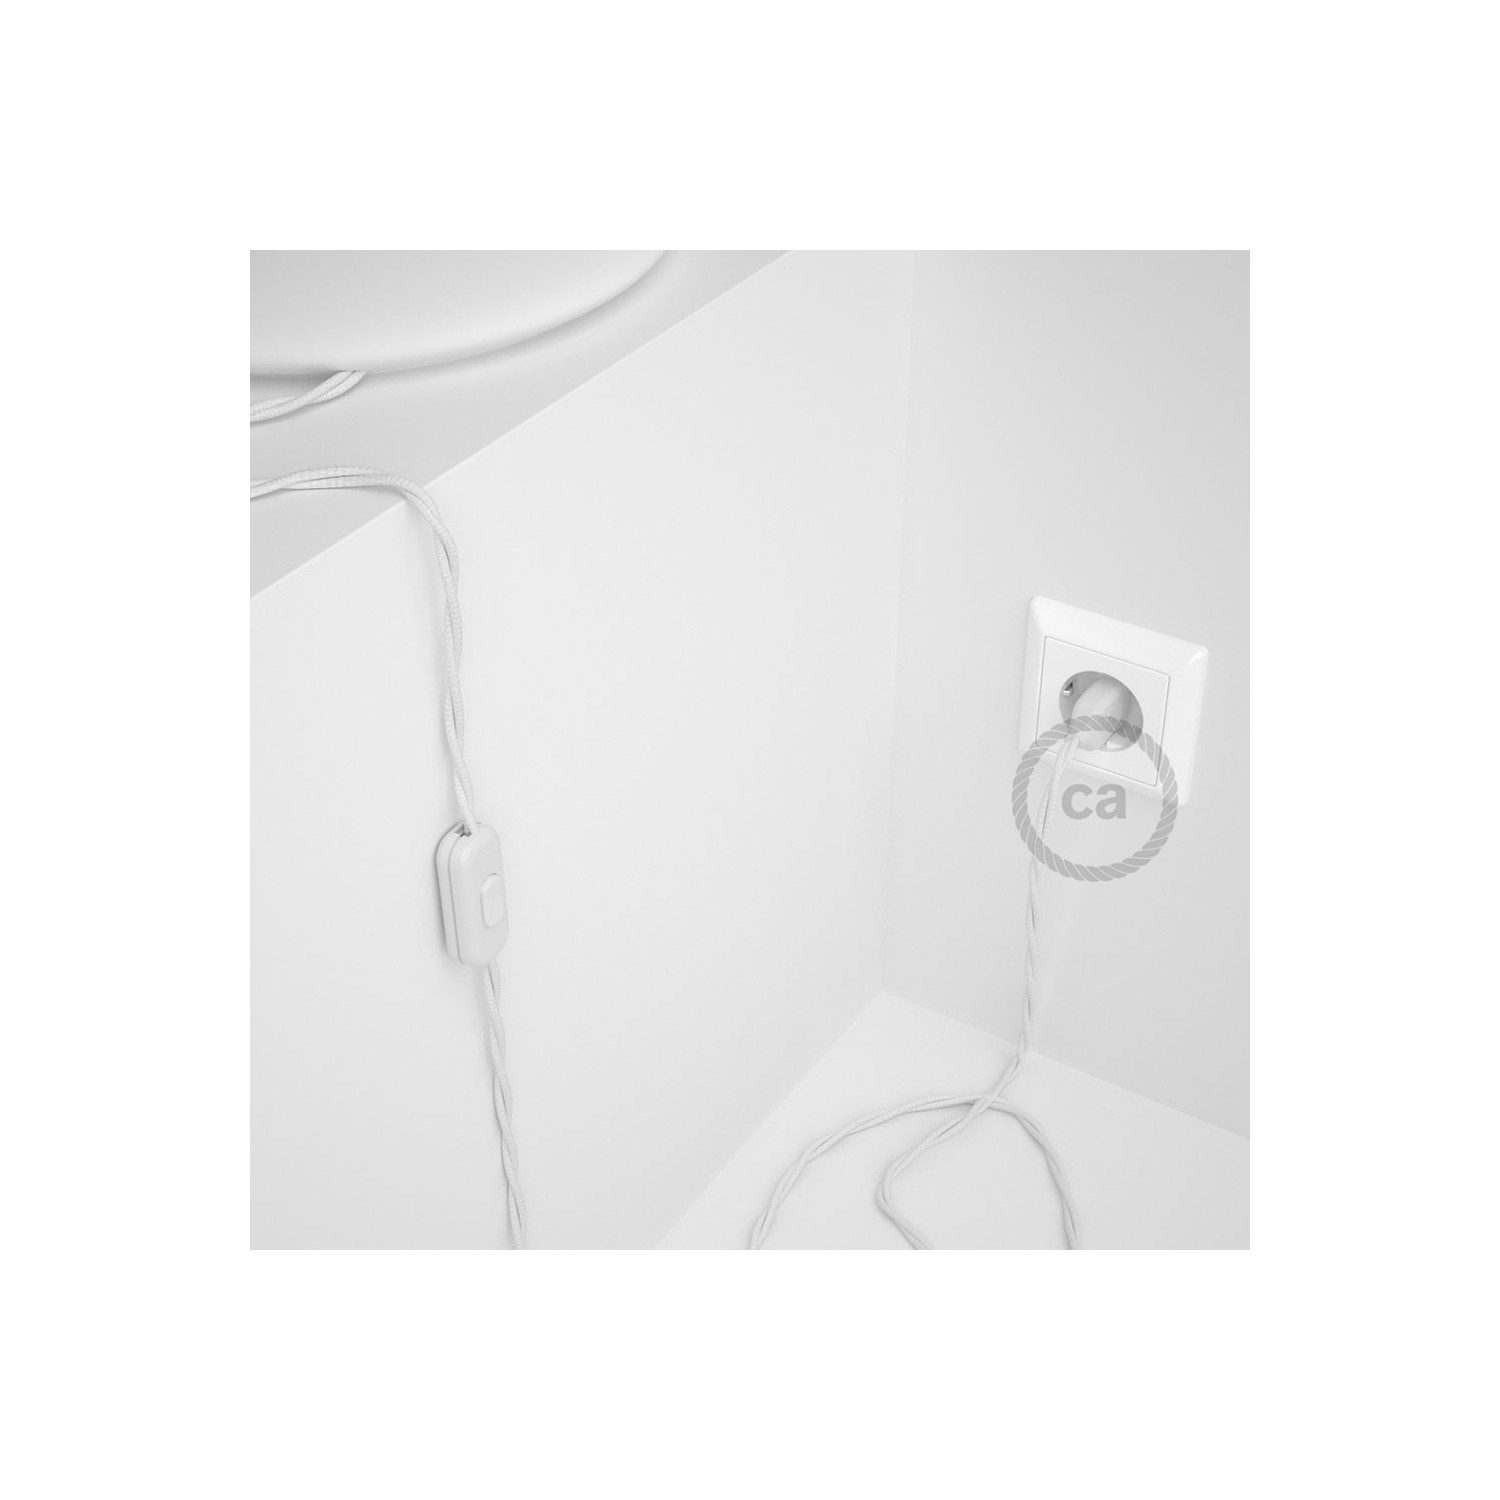 Cablaggio per lampada, cavo TM01 Effetto Seta Bianco 1,80 m. Scegli il colore dell'interruttore e della spina.